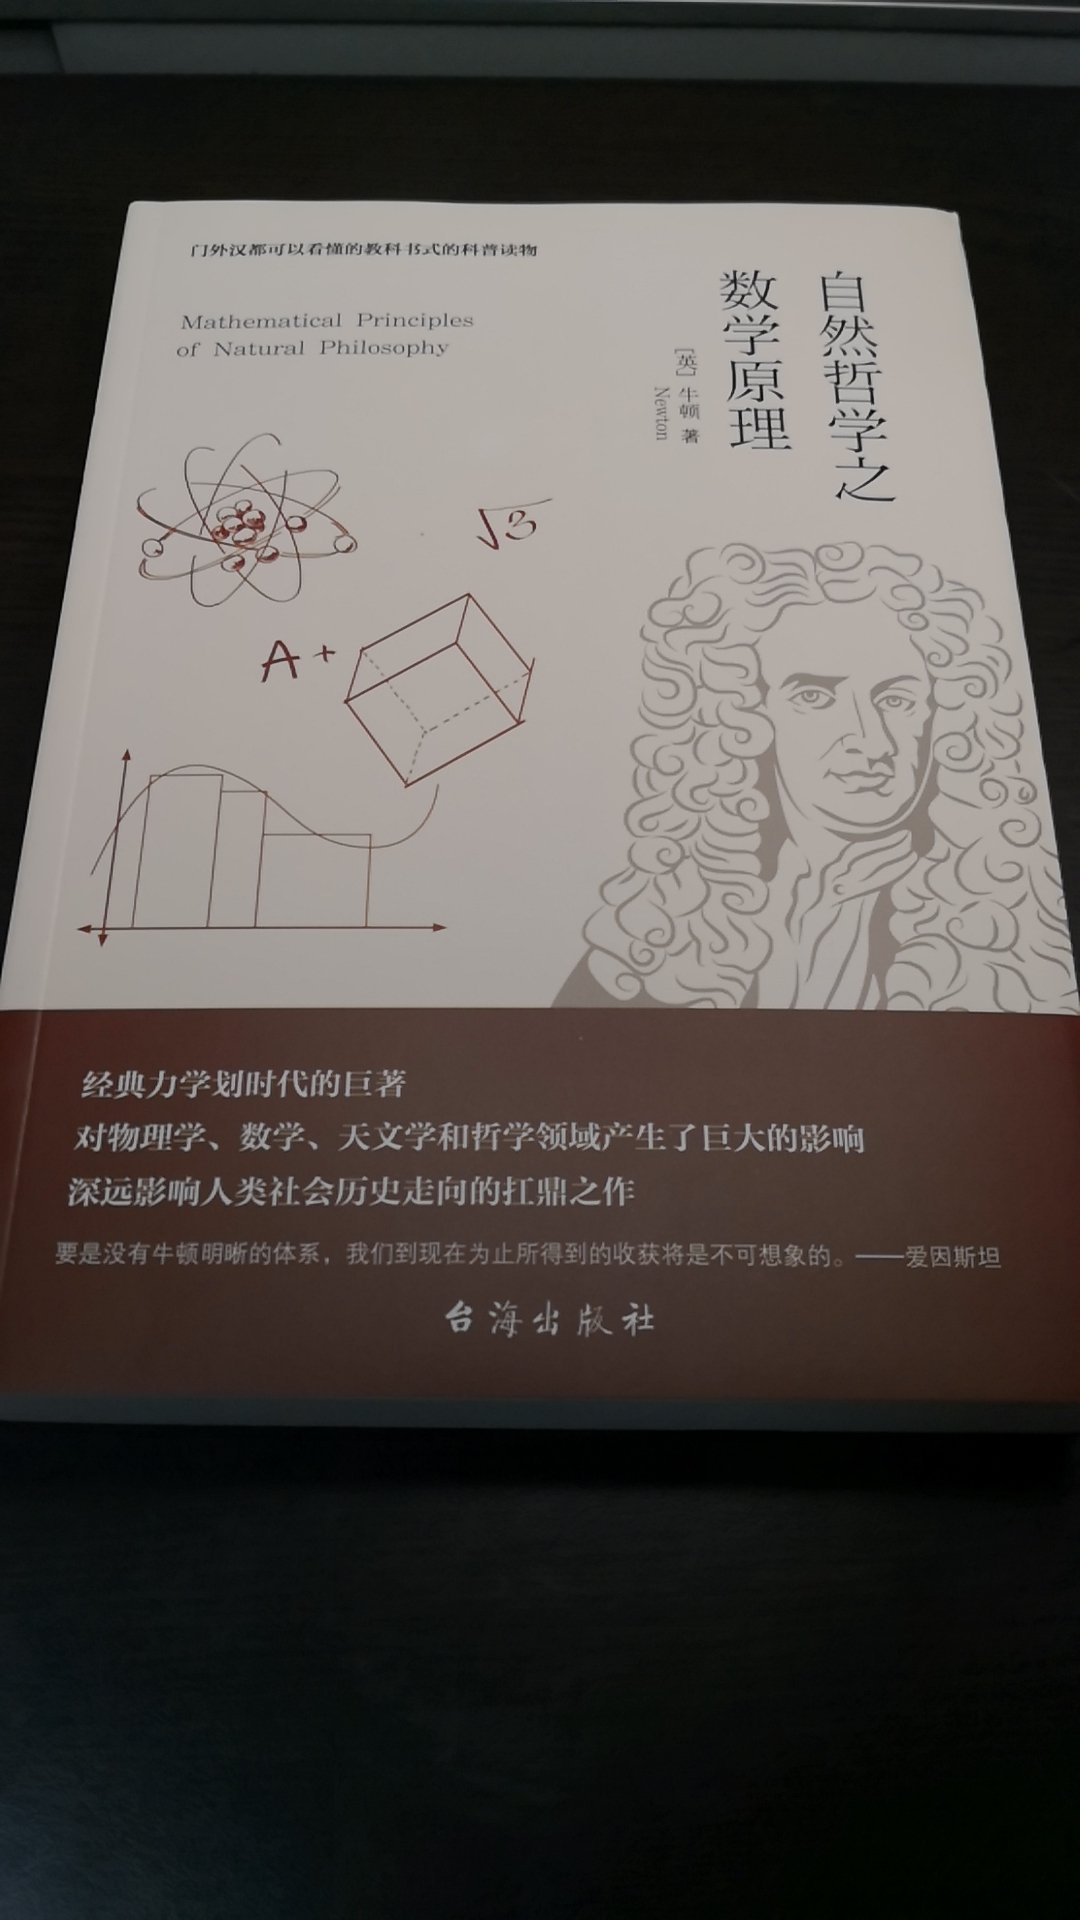 牛顿的书，认真的看一看，学习里面的思想。提高自己。